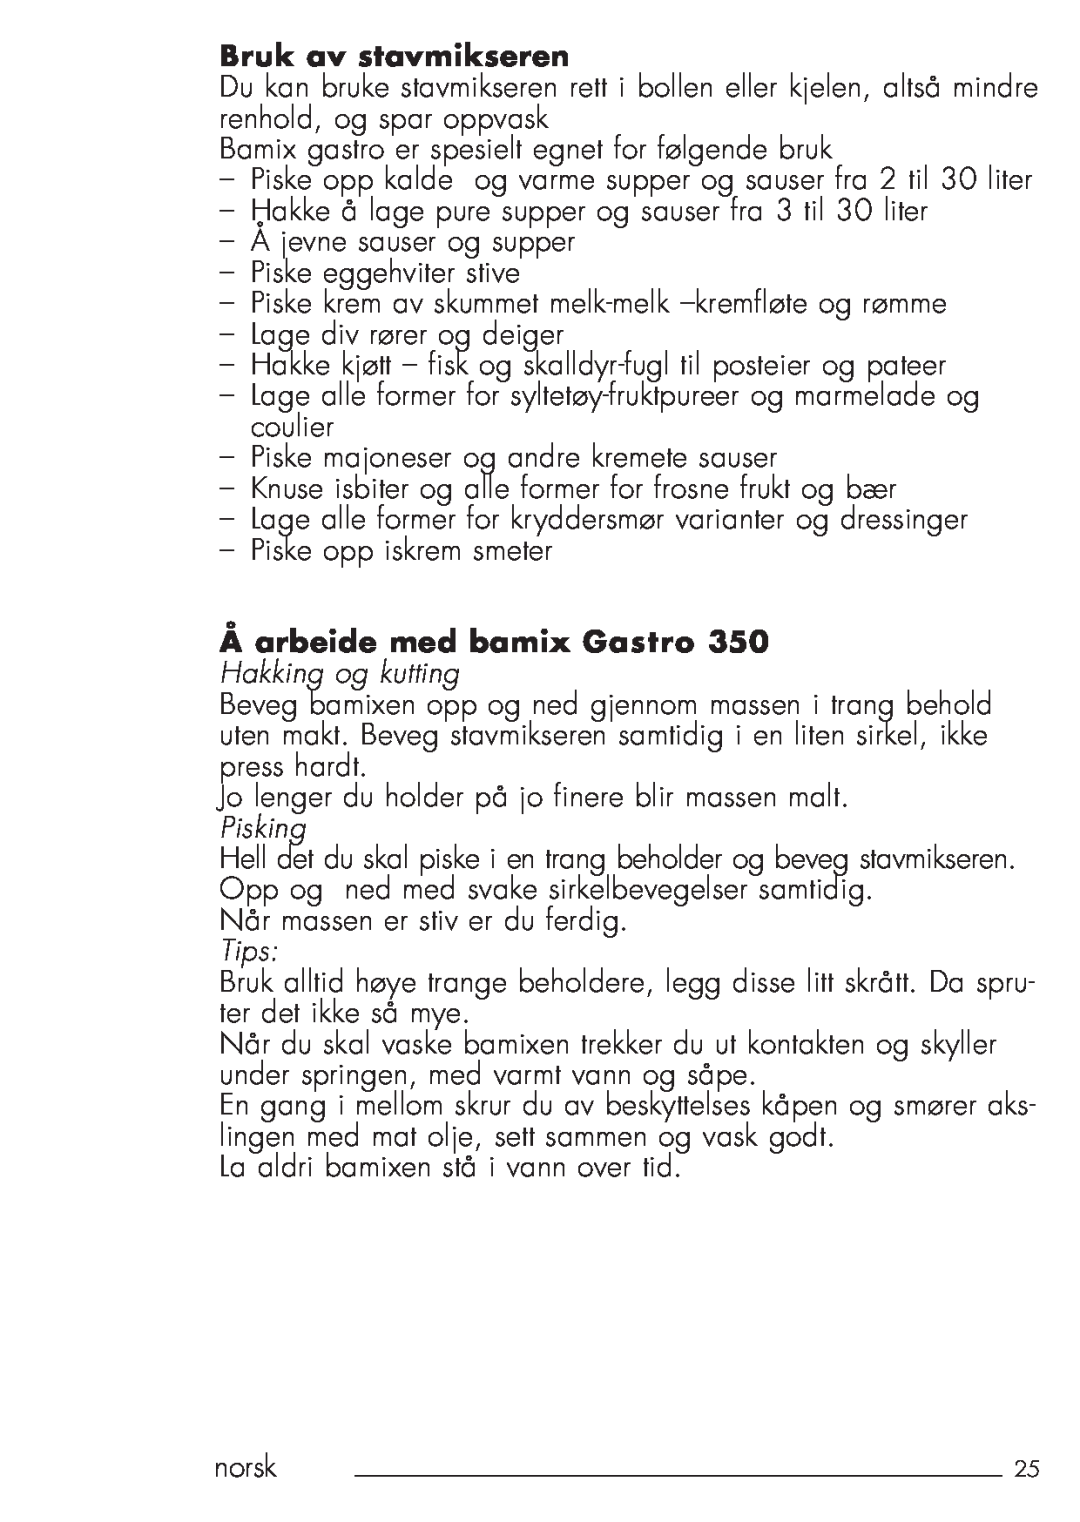 Bamix 106.031 manual Bruk av stavmikseren, Åarbeide med bamix Gastro, Hakking og kutting, Pisking, Tips 